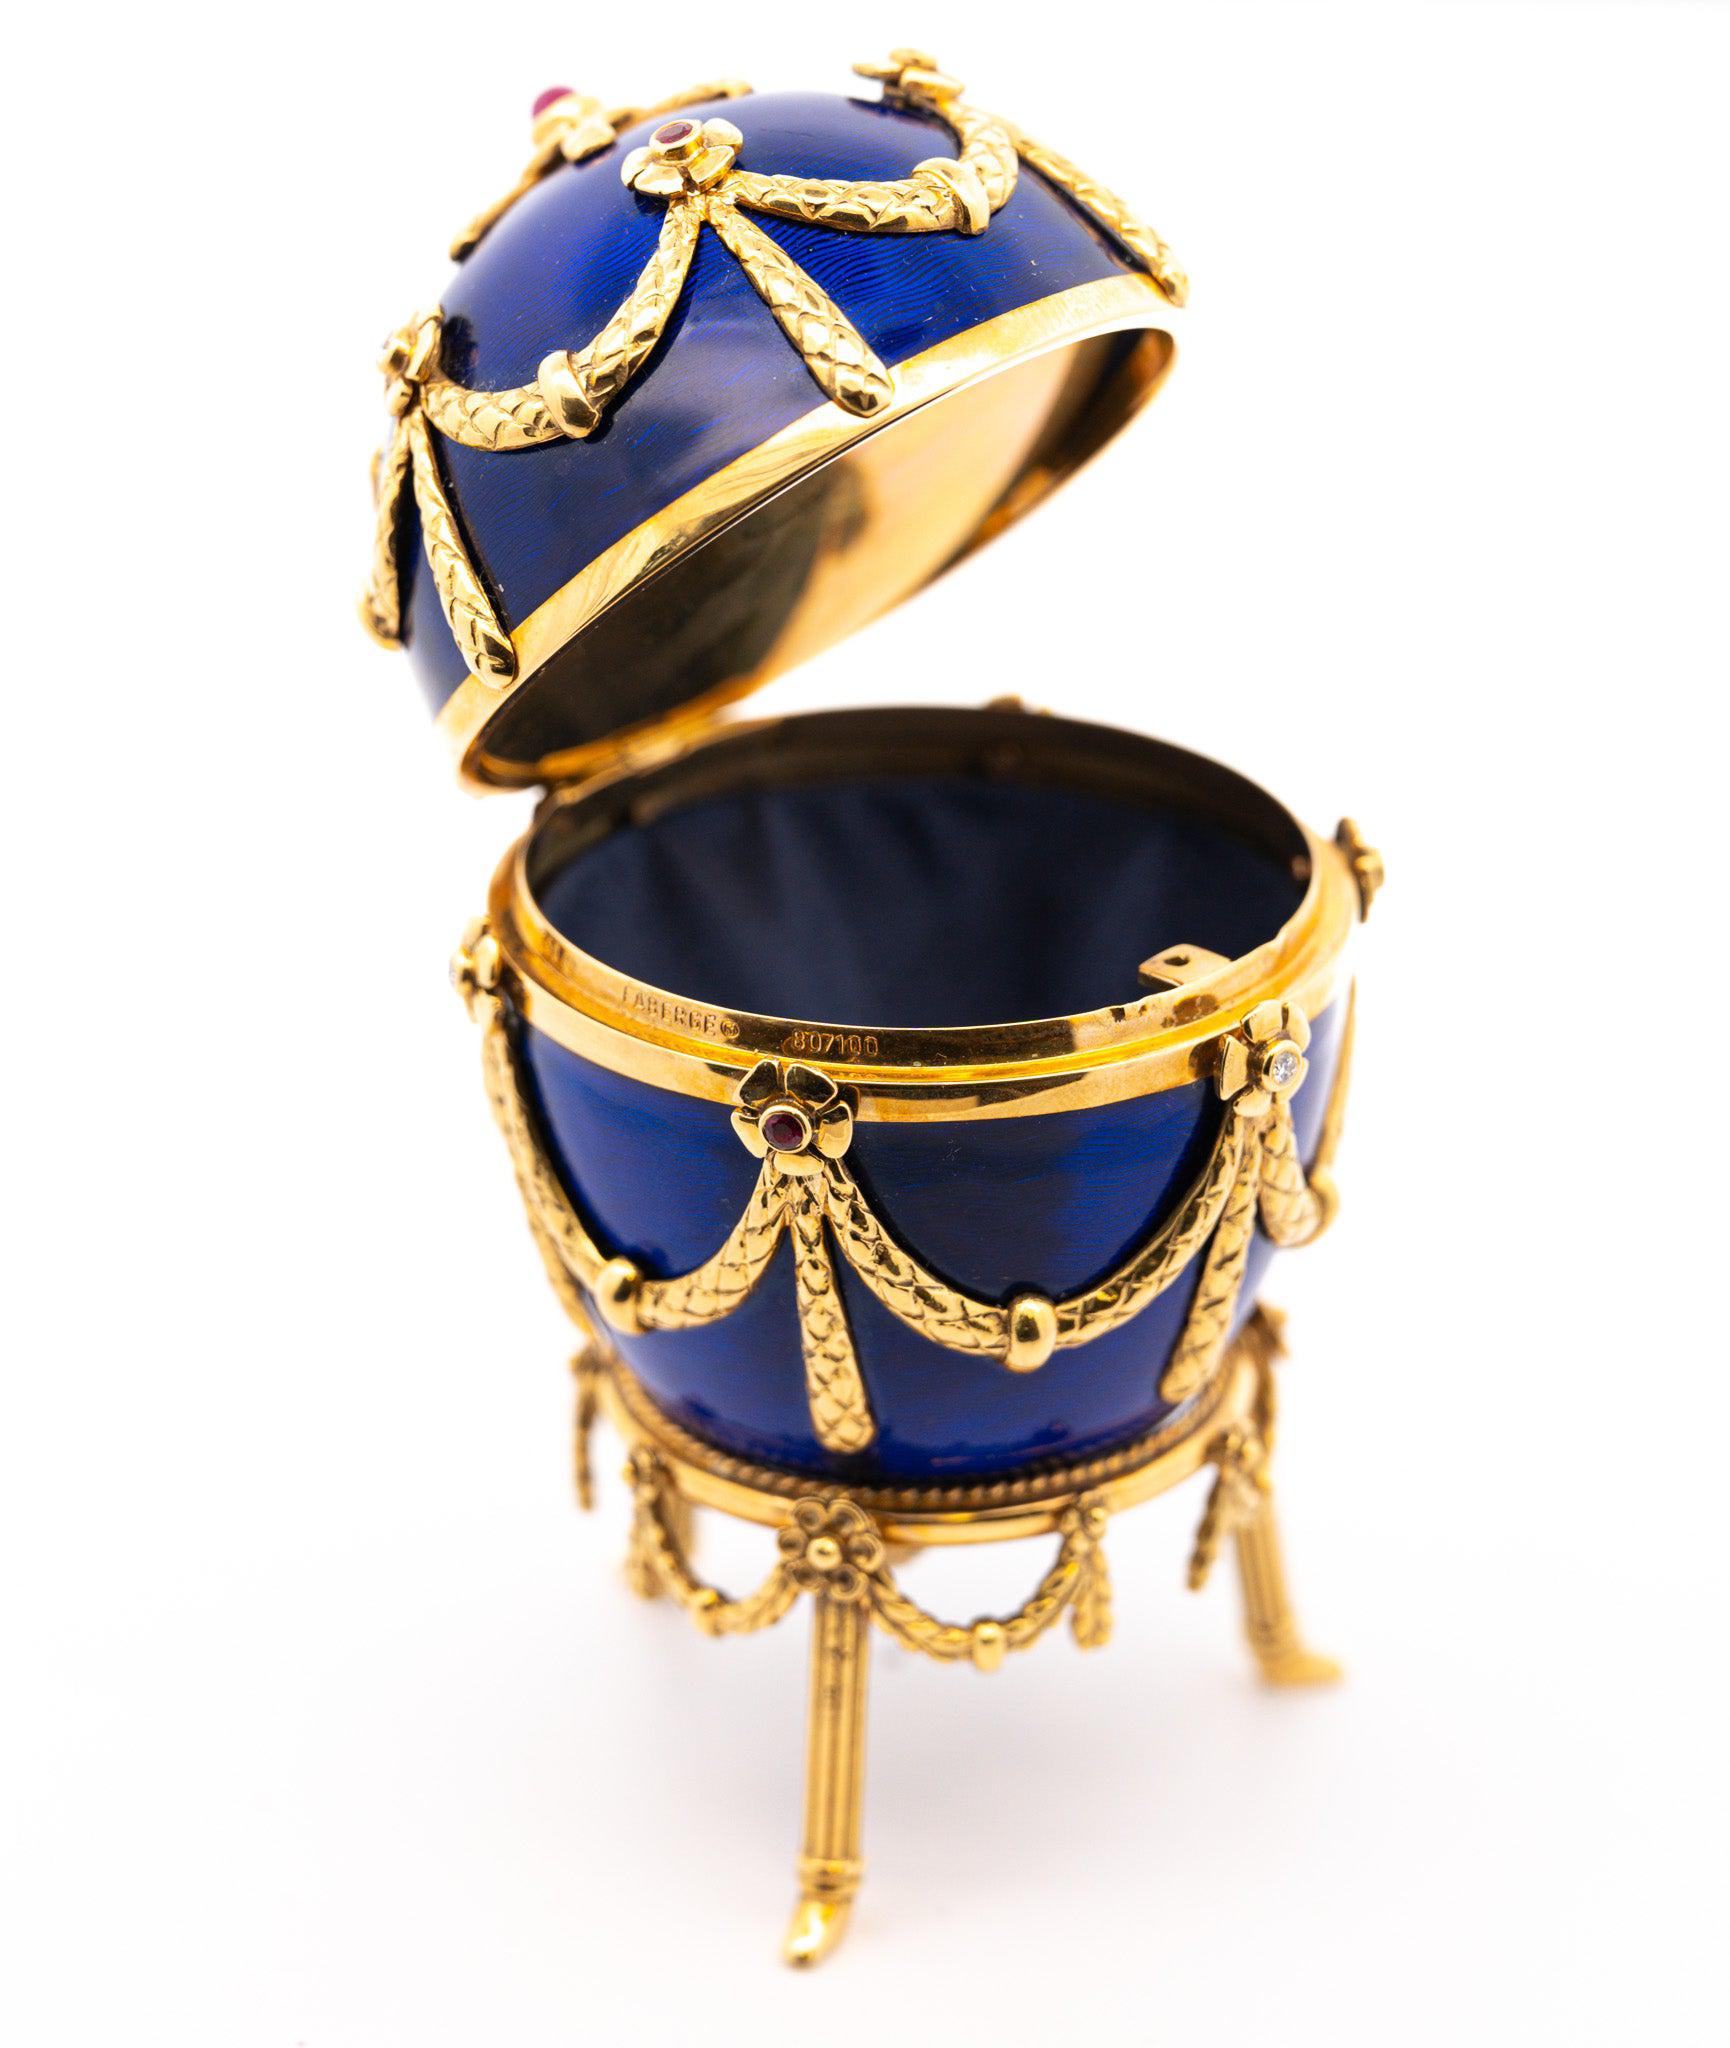 Original Fabergé Egg Victor Mayer 80/100 Blue Enamel with Original Box & Certificate